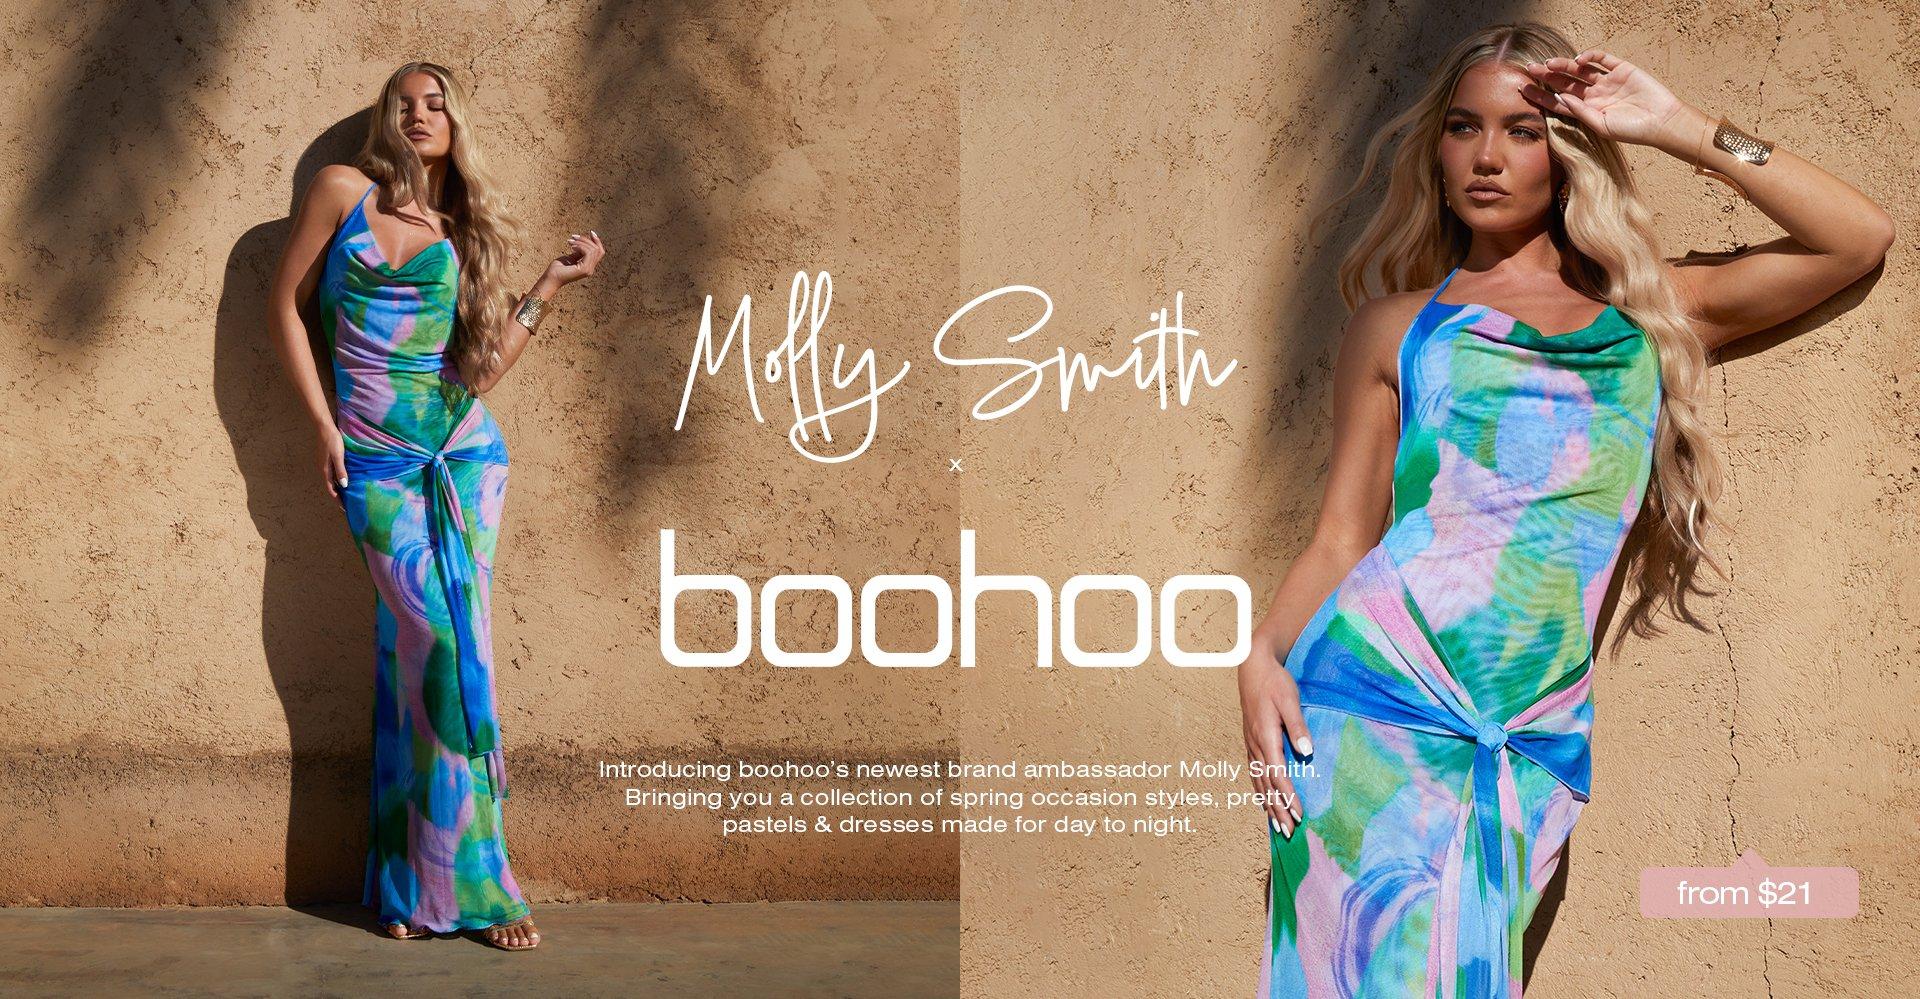 Molly Smith X Boohoo